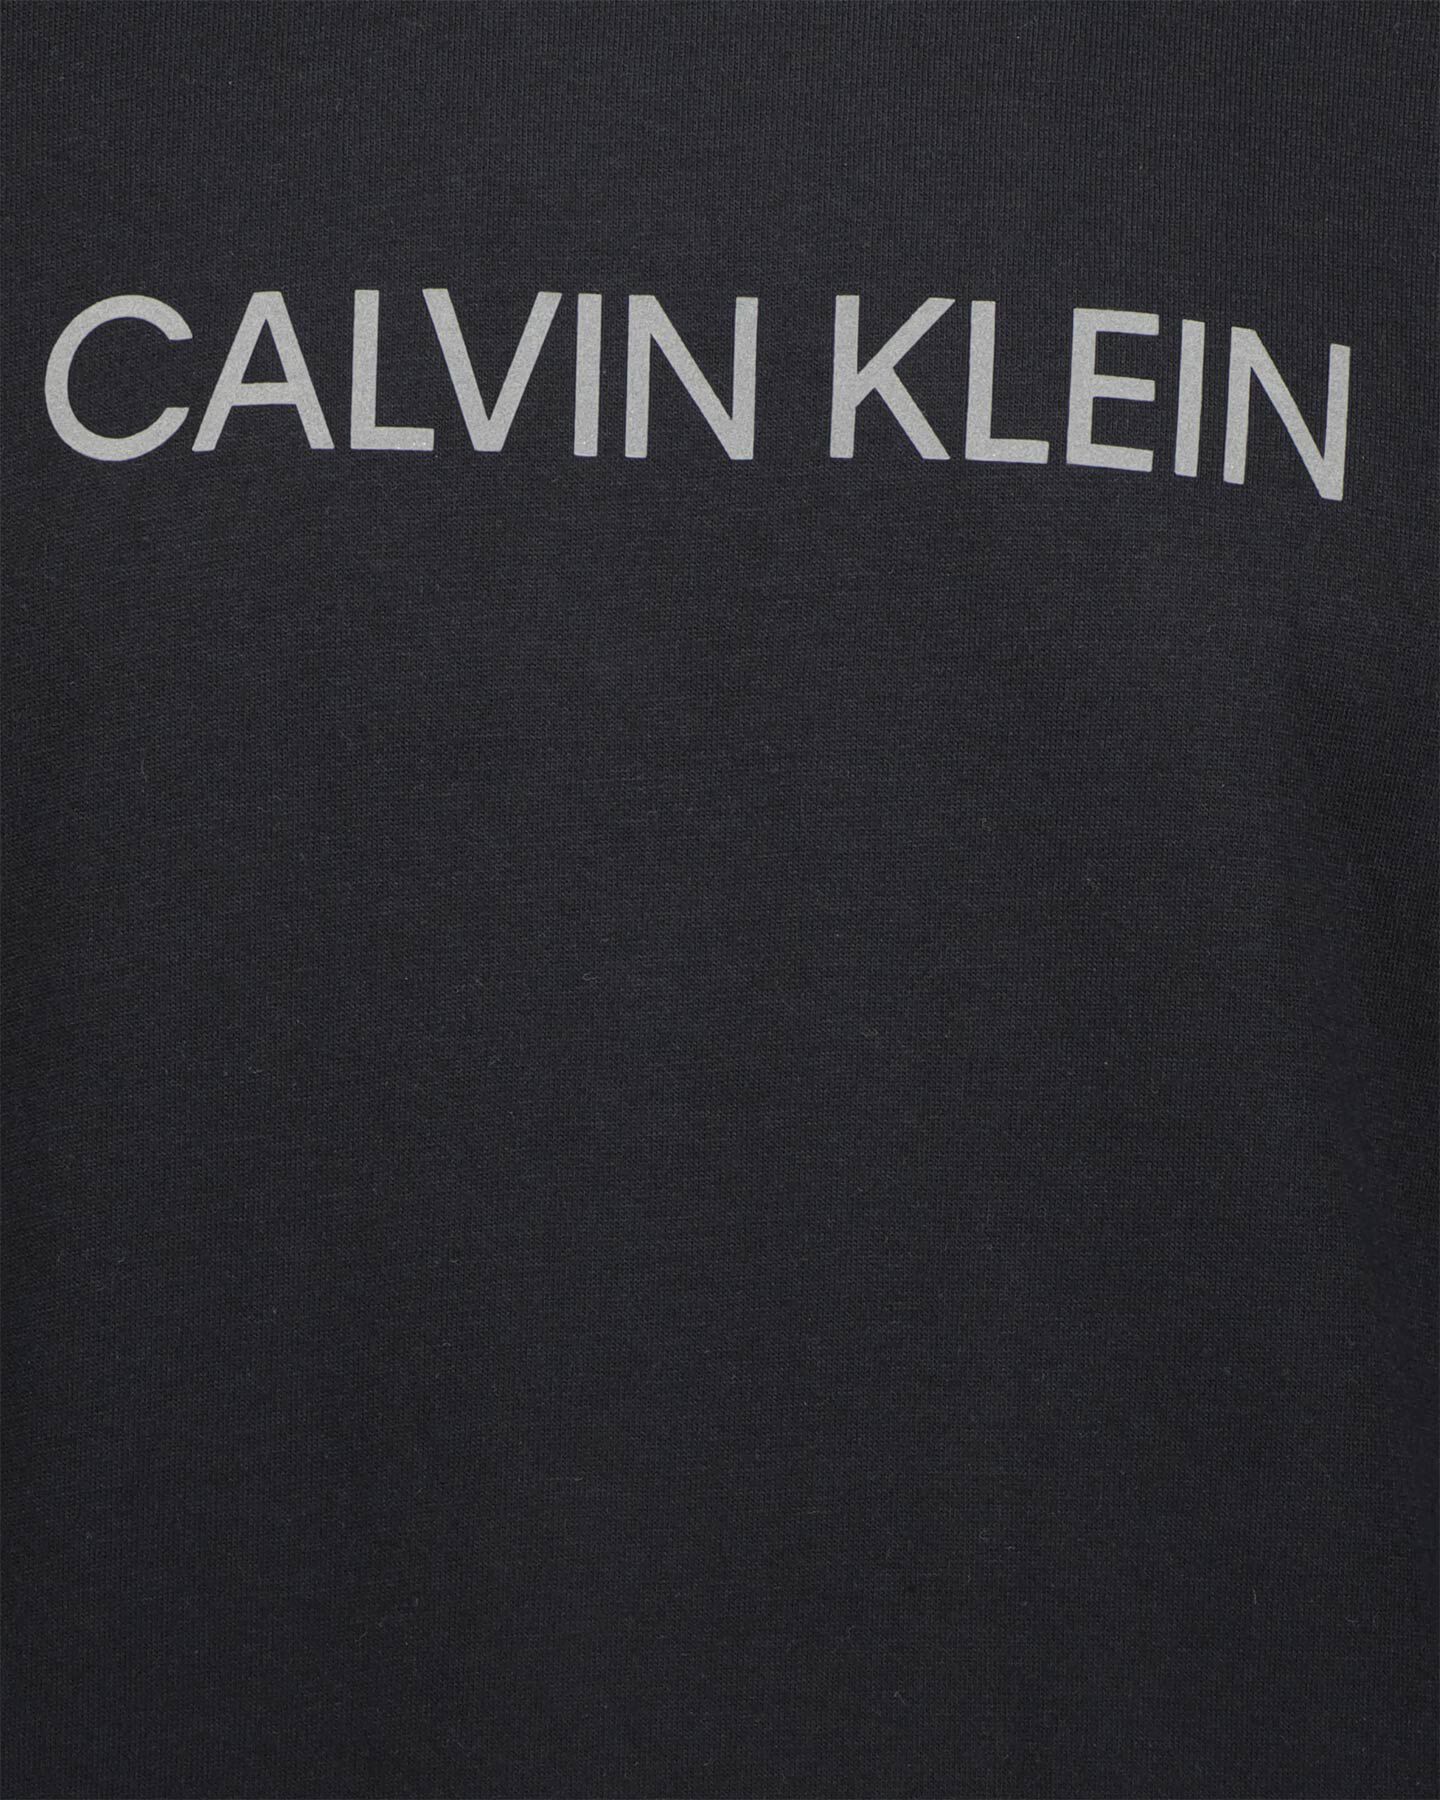  T-Shirt CALVIN KLEIN SPORT ESSENTIAL LOGO M S4100255|001|S scatto 2